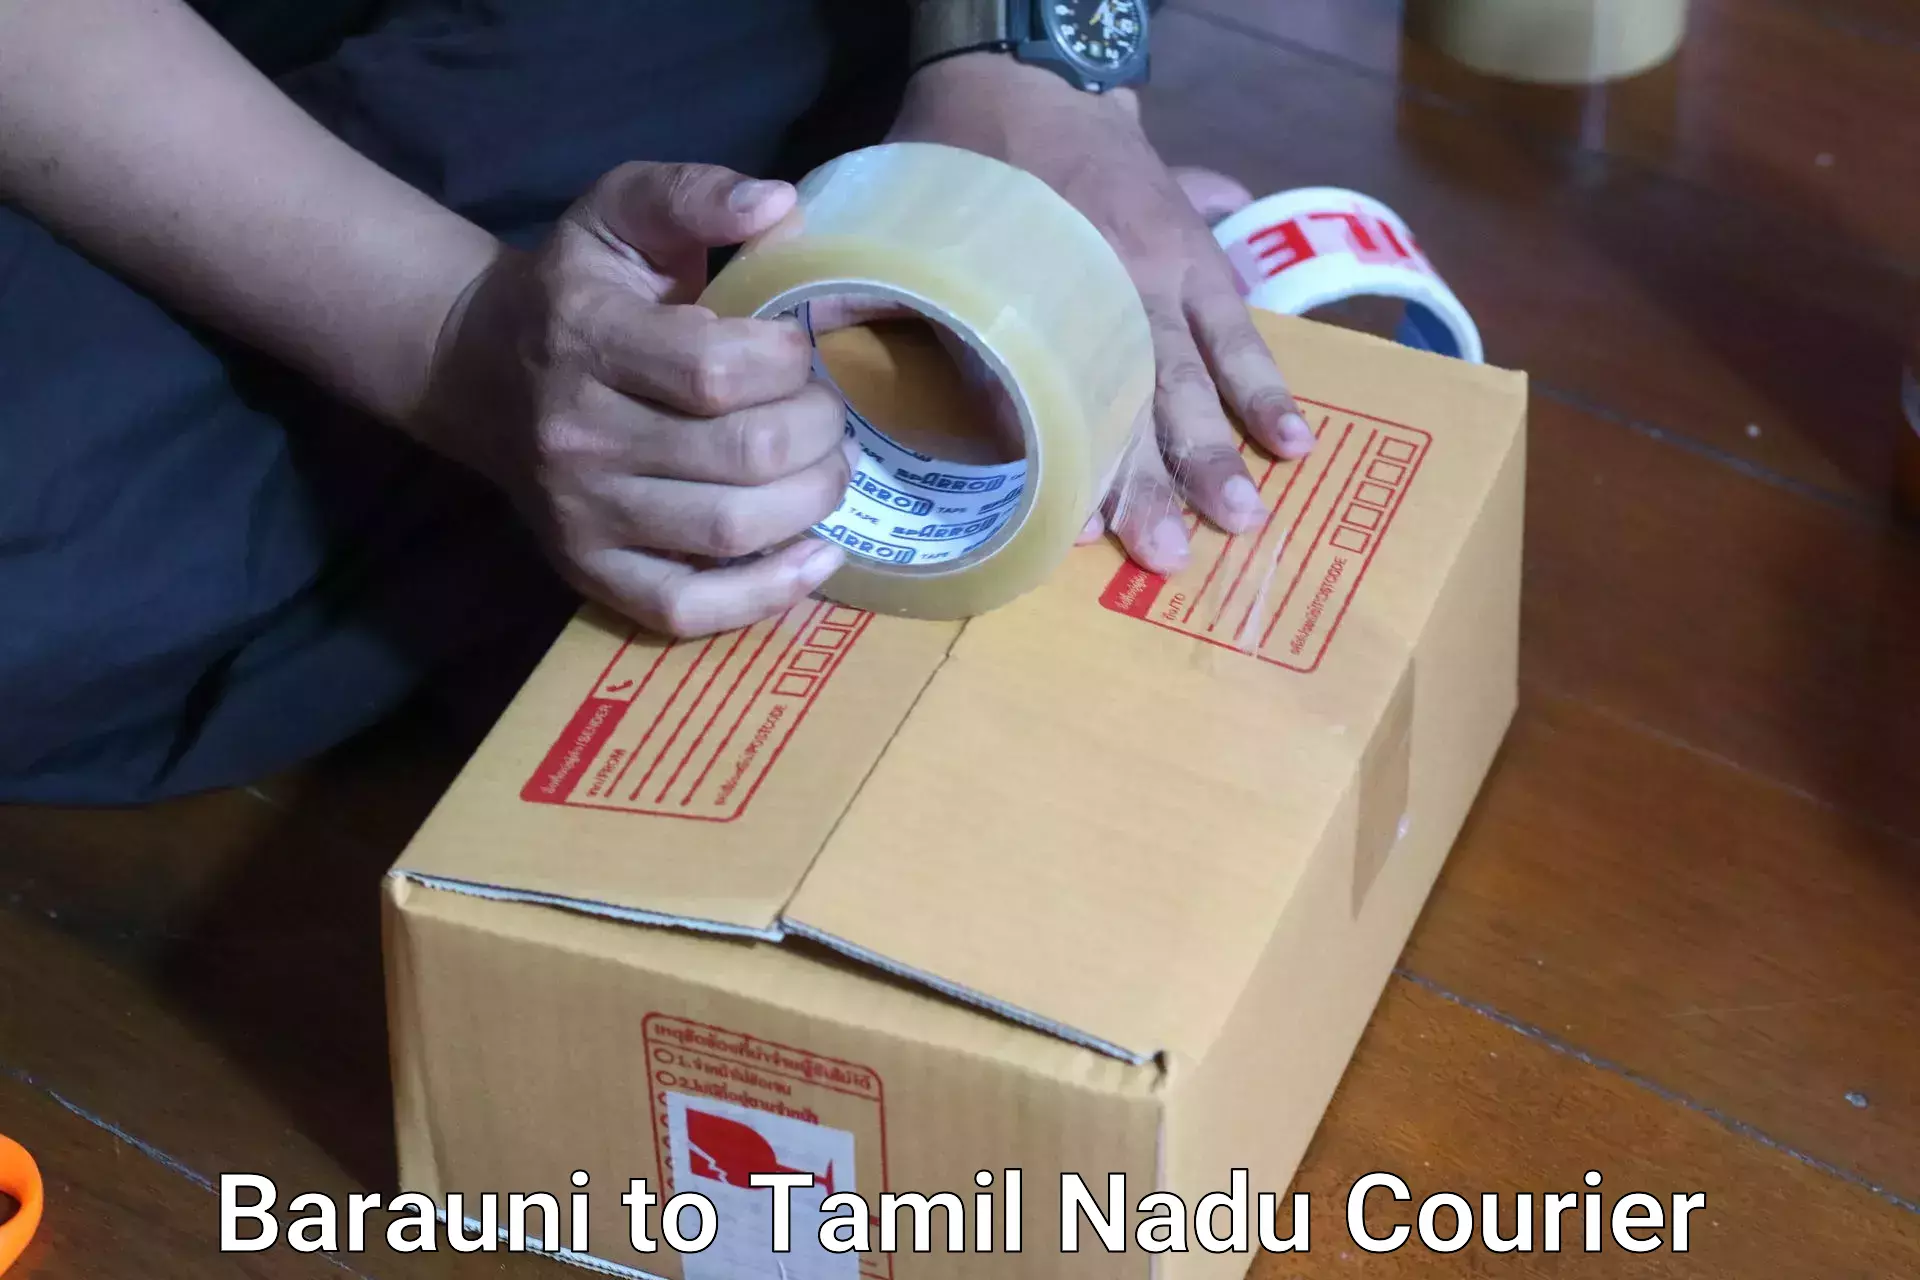 Luggage shipping planner Barauni to Aranthangi